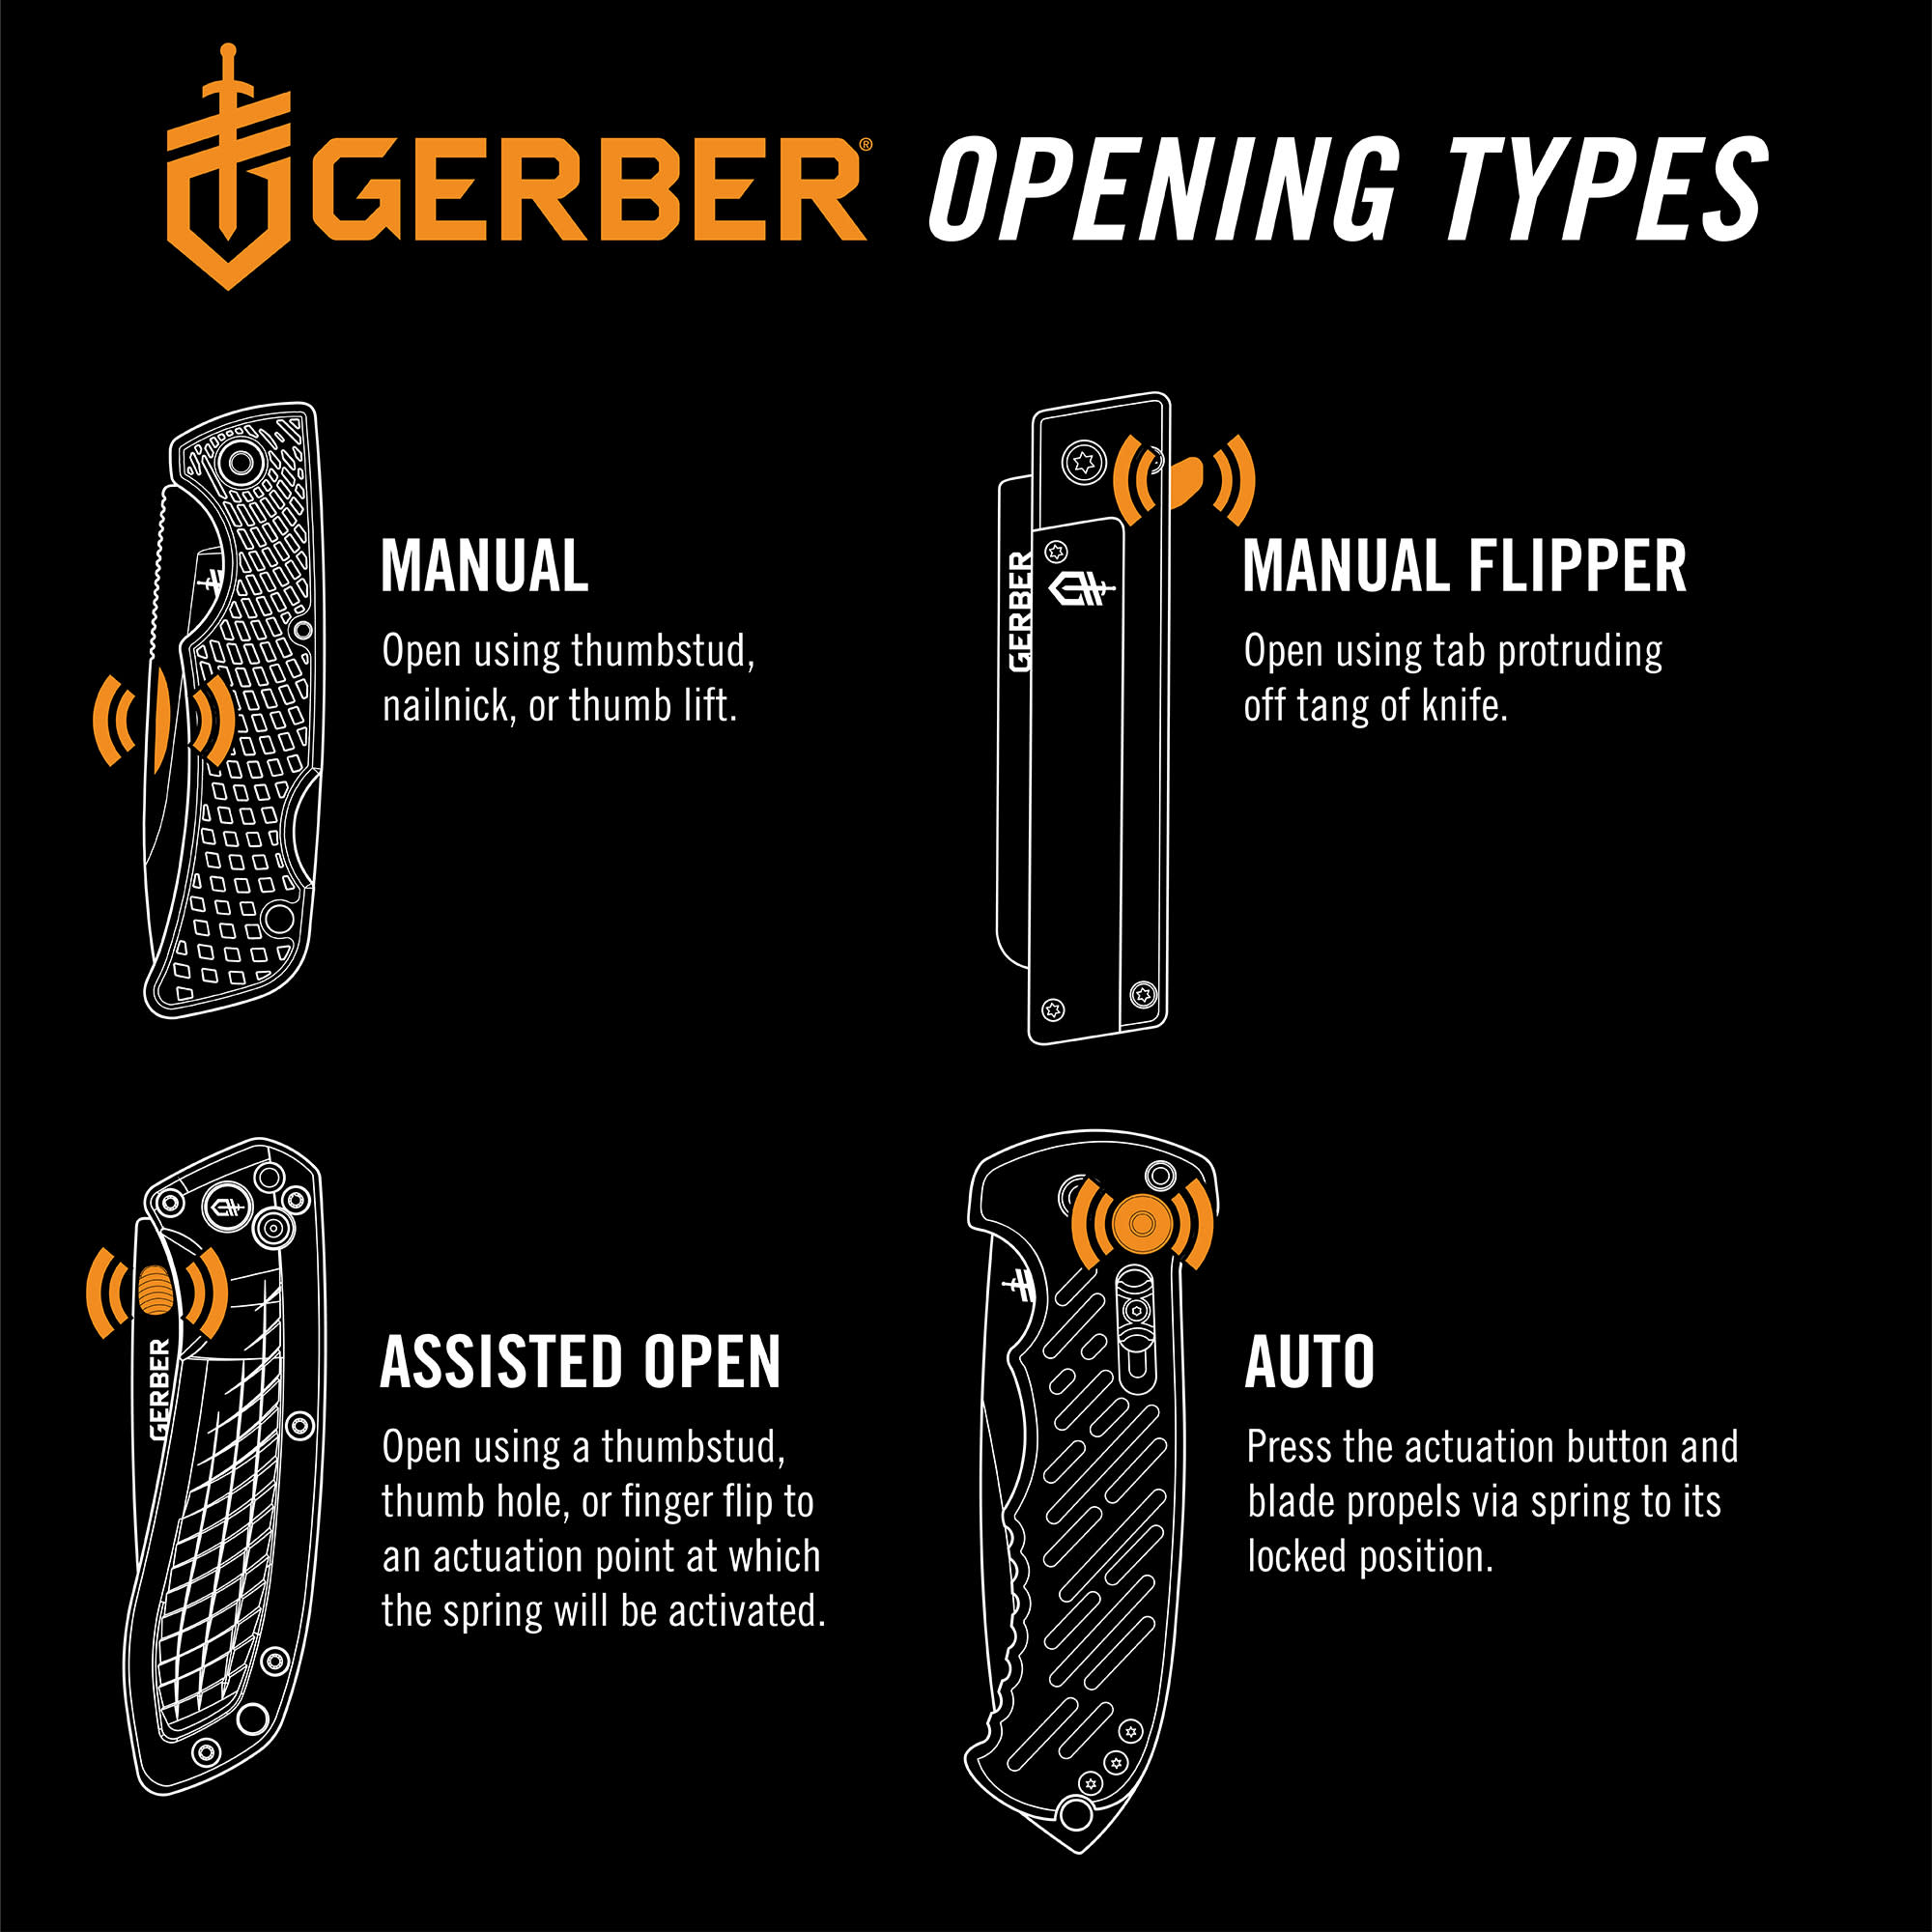 Gerber® Mansfield Folding Knife - Natural Micarta